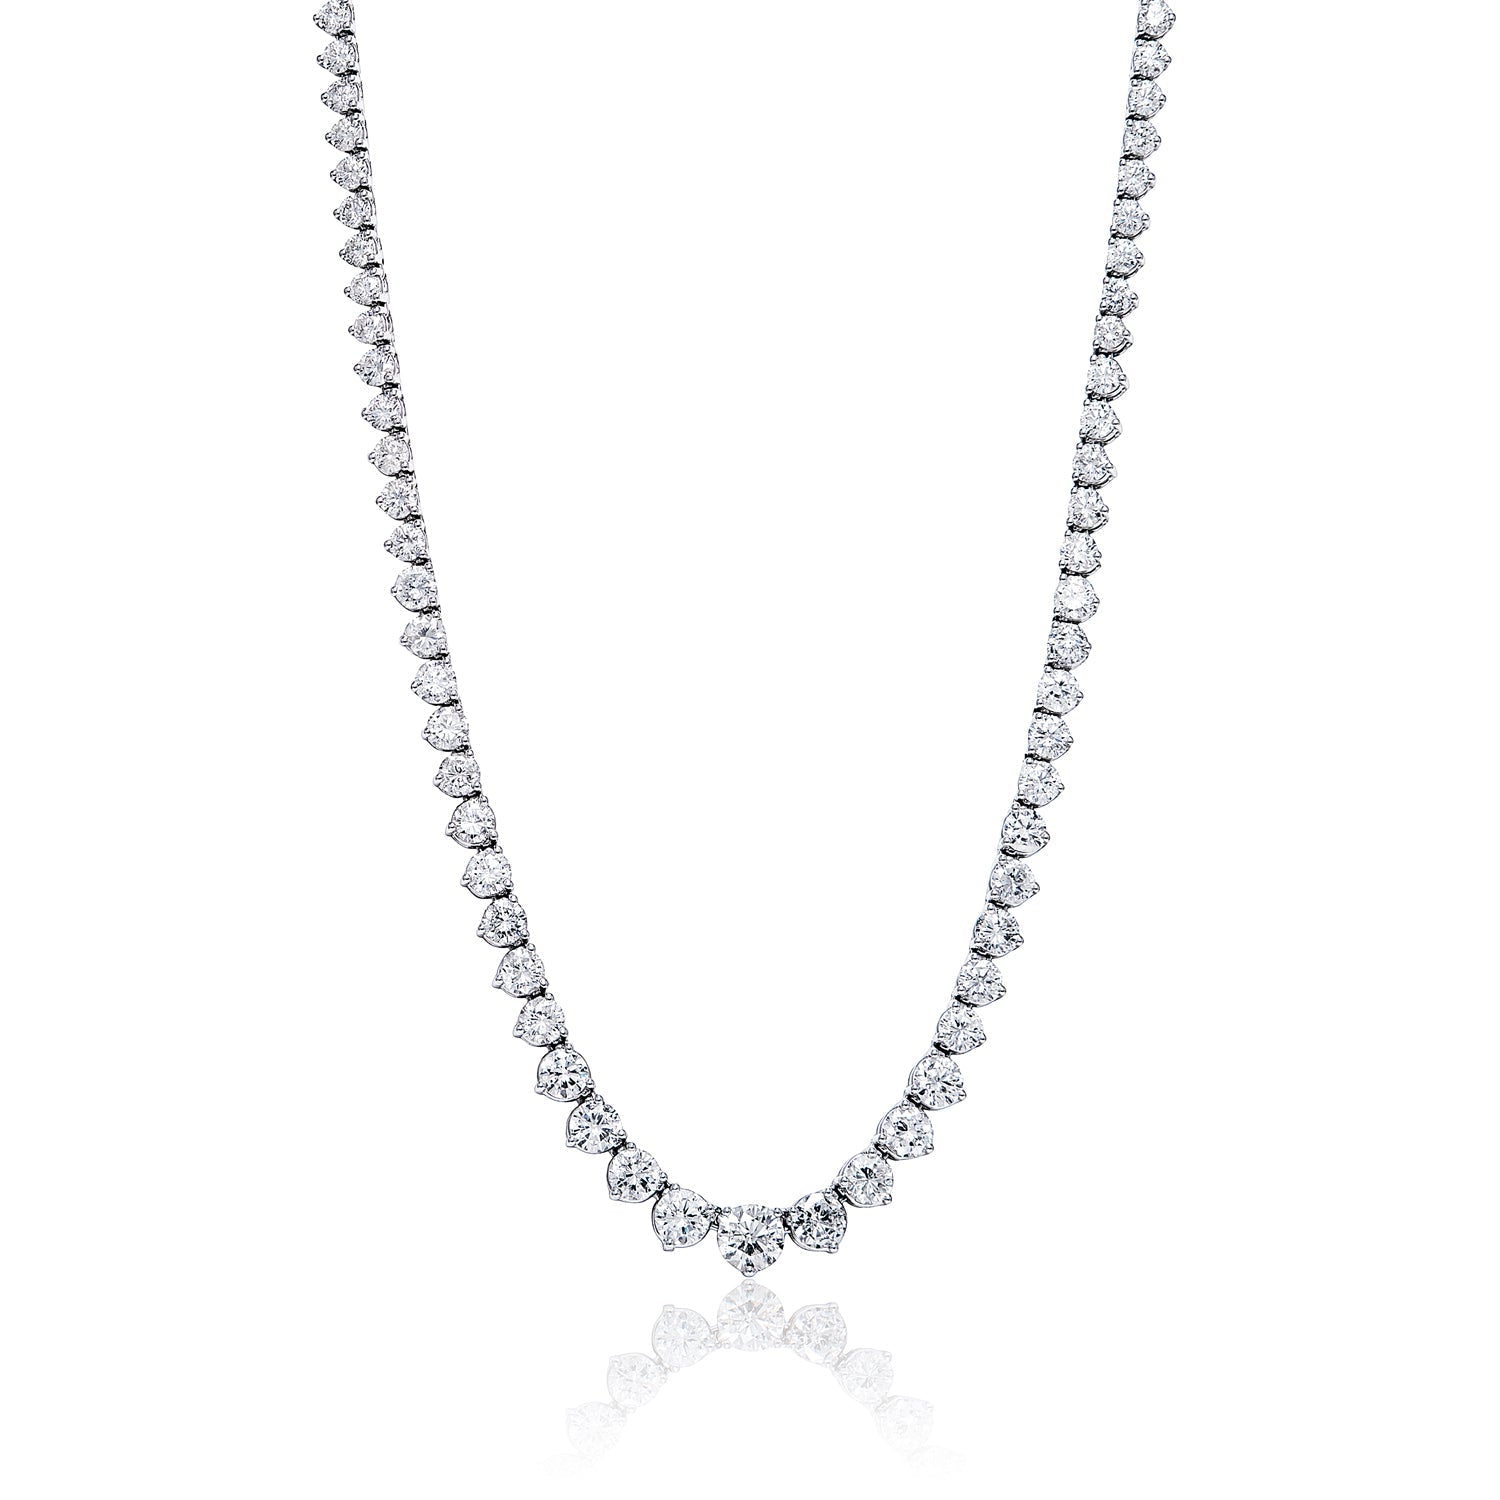 Elaine 11 Carat Round Brilliant Diamond Necklace in 14 Karat White Gold For Ladies Full View